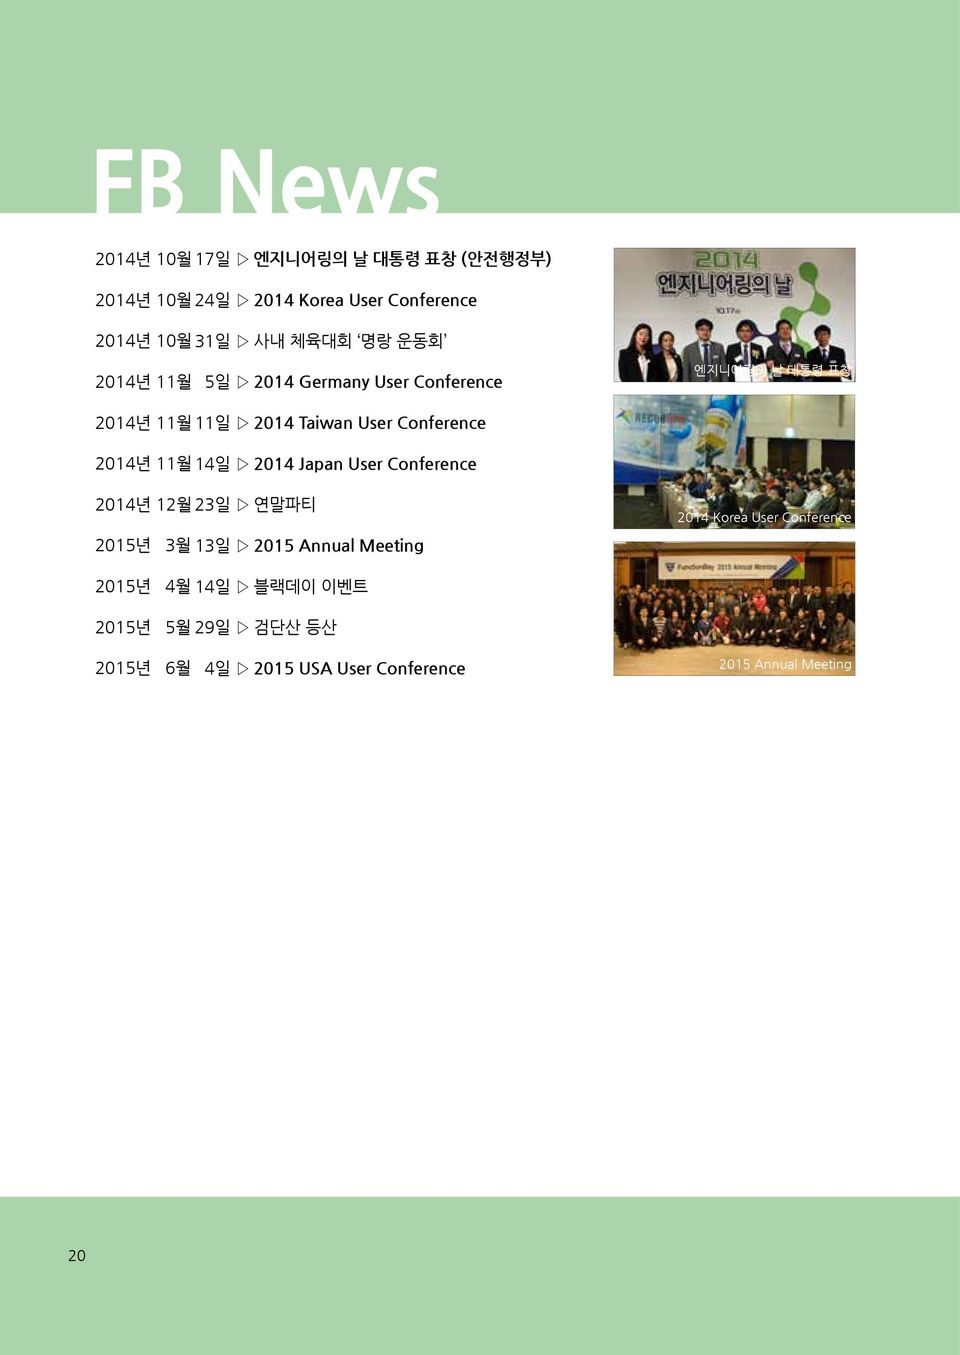 2014년 11월 14일 2014 Japan User Conference 2014년 12월 23일 연말파티 2015년 3월 13일 2015 Annual Meeting 2014 Korea User